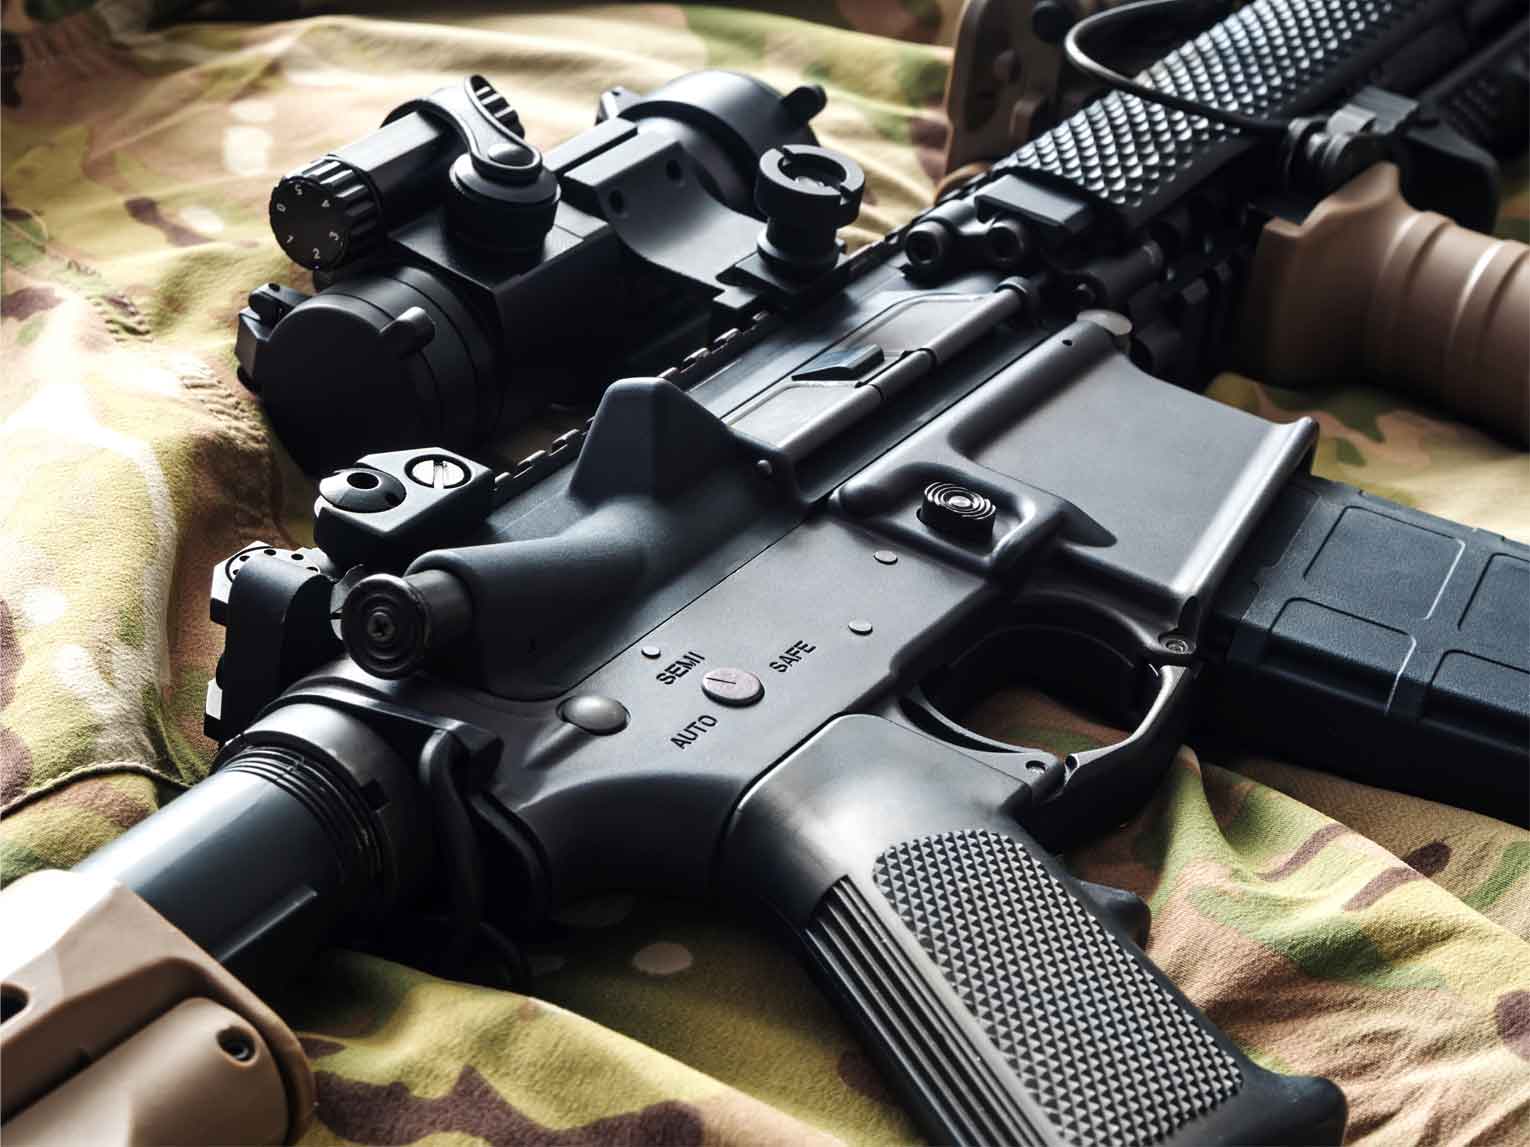 AR 15 Rifle